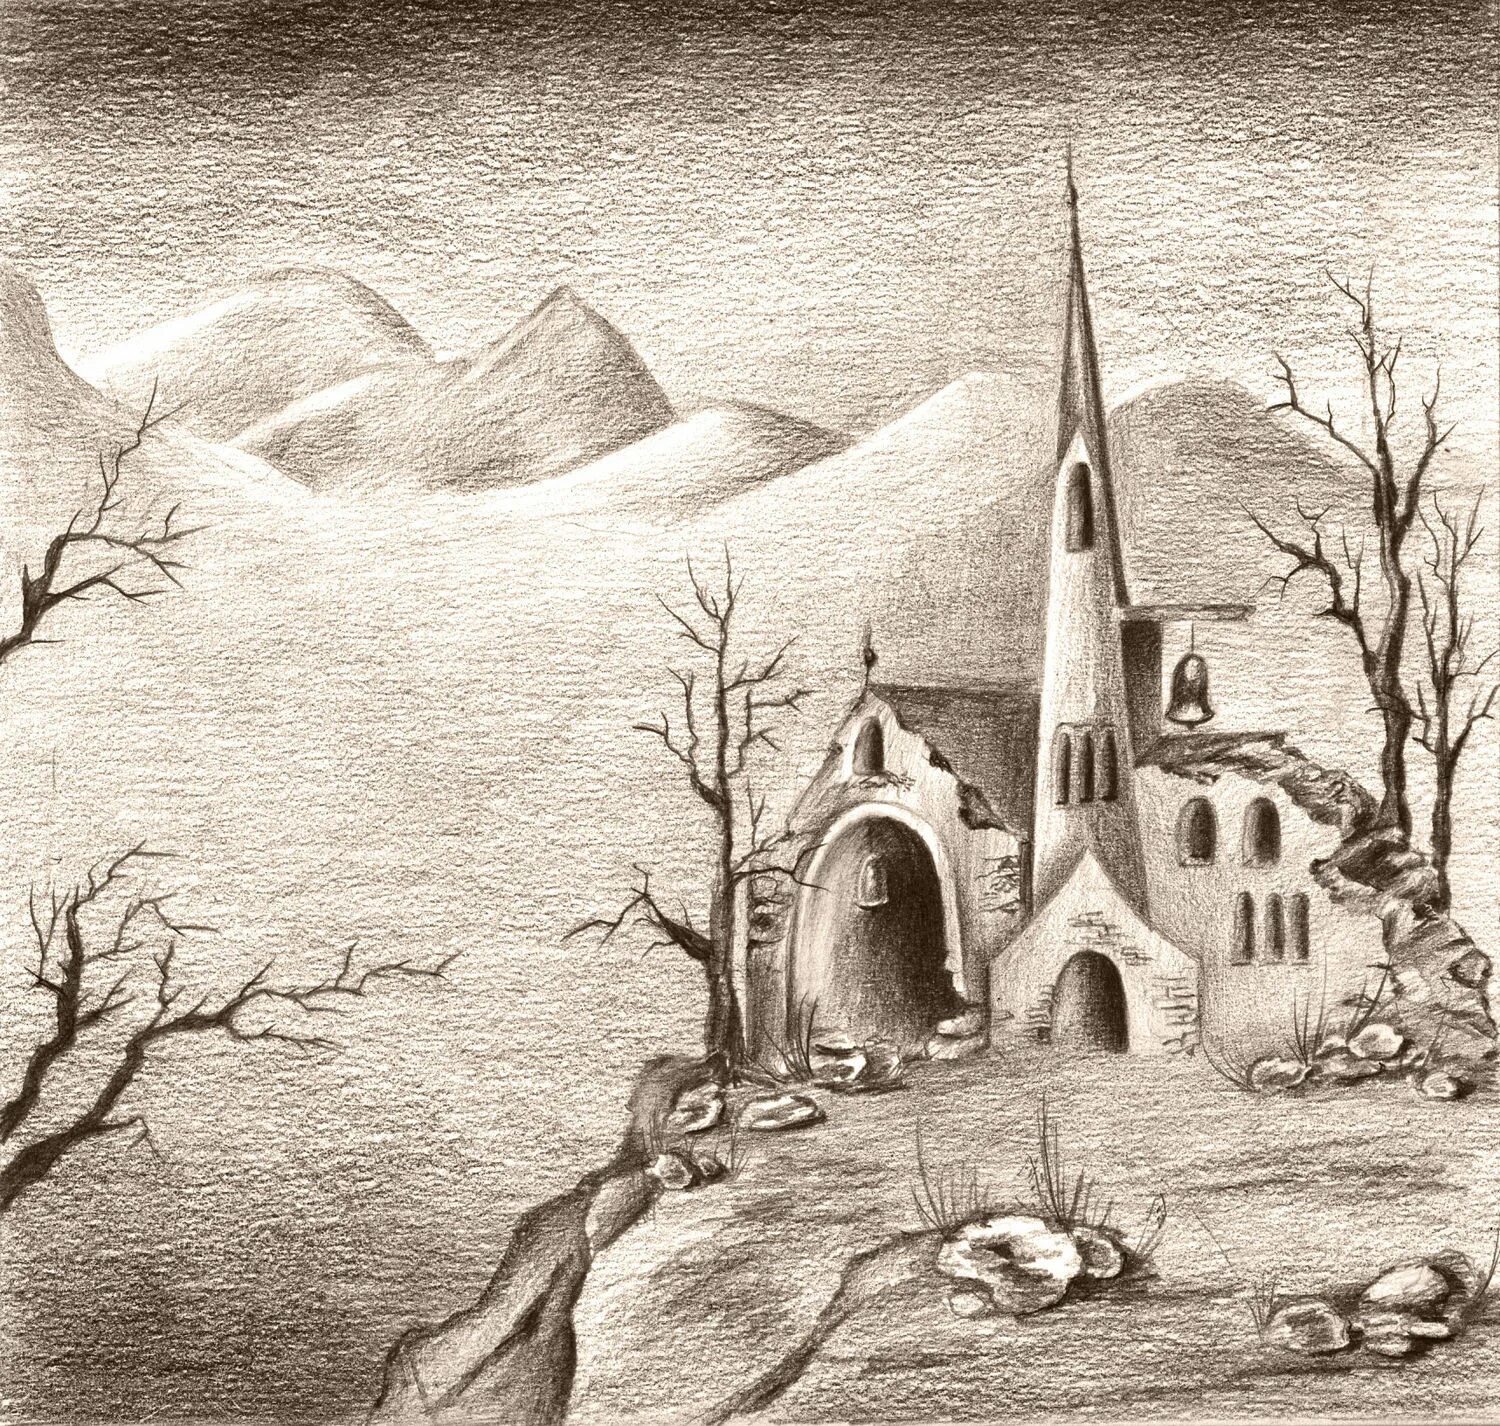 Старый замок Мусоргский иллюстрация. Рисунок к пьесе Мусоргского старый замок. Старый замок Мусоргский. Крепость Графика.